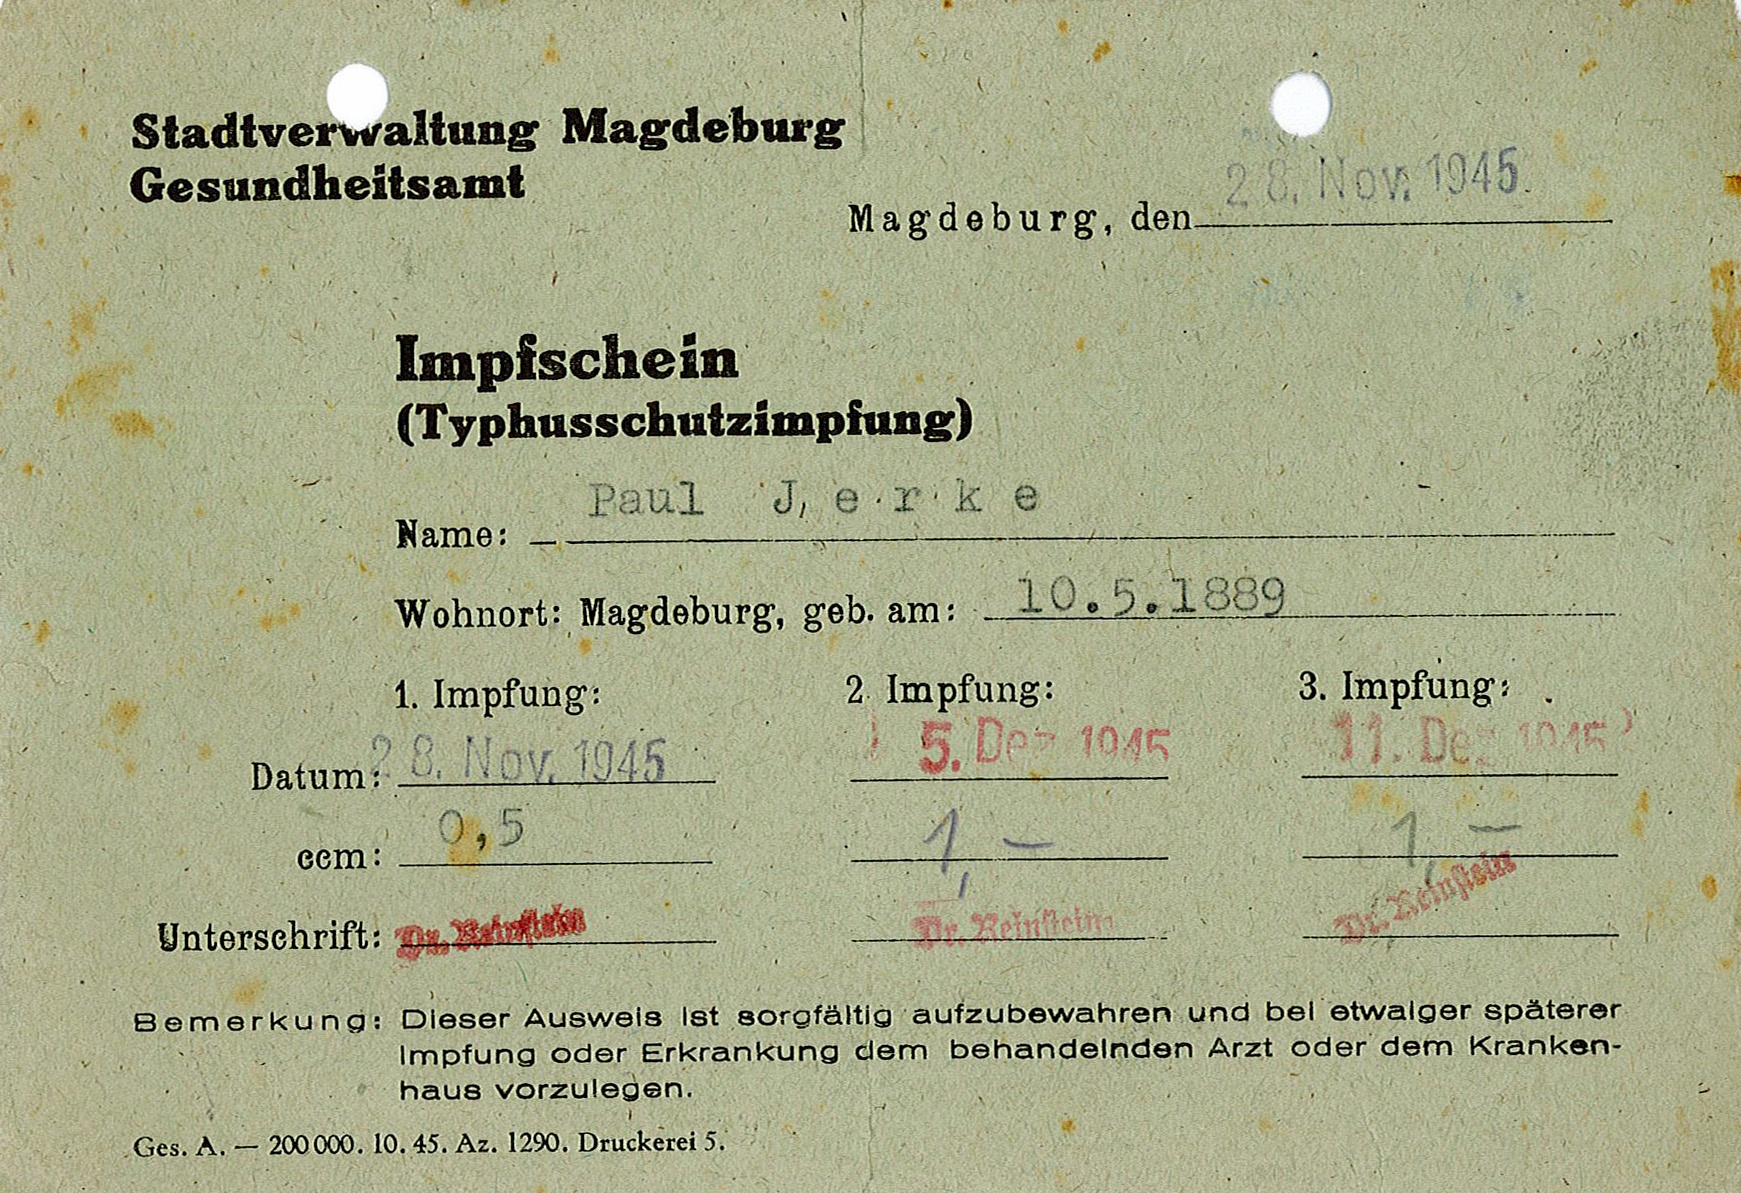 Impfschein für Tyhusschutzimpfung von Paul Wilhelm Jerke, 1945 (Museum Wolmirstedt RR-F)